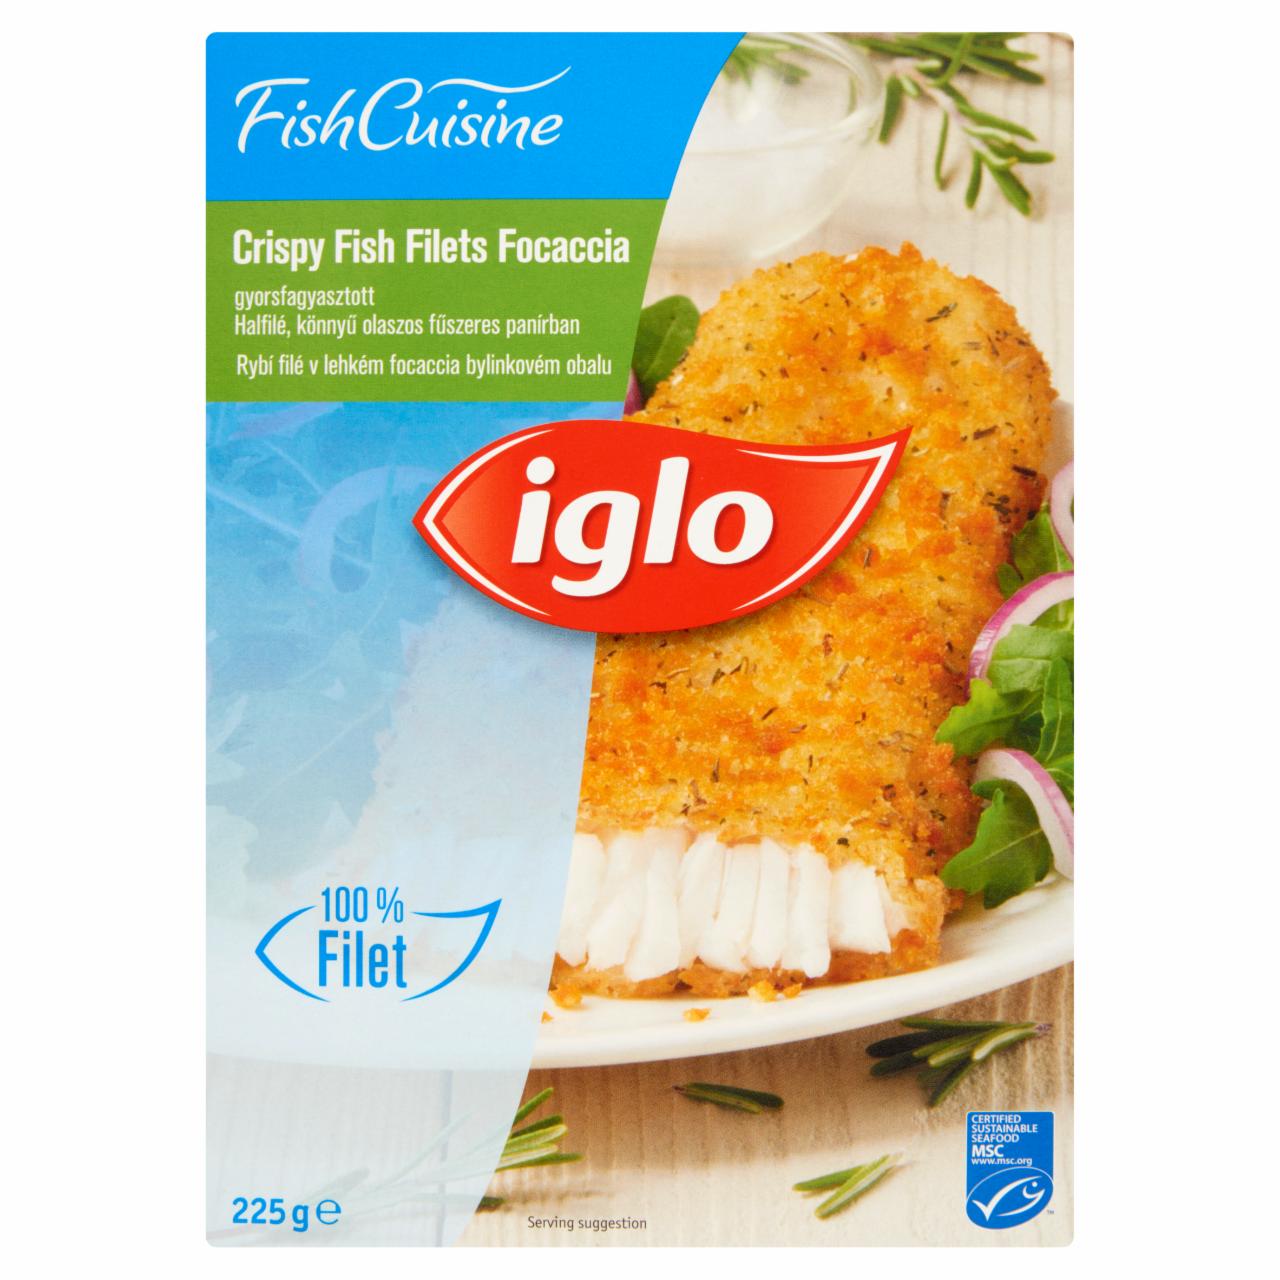 Képek - Iglo Fish Cuisine Focaccia gyorsfagyasztott halfilé könnyű olaszos fűszeres panírban 225 g